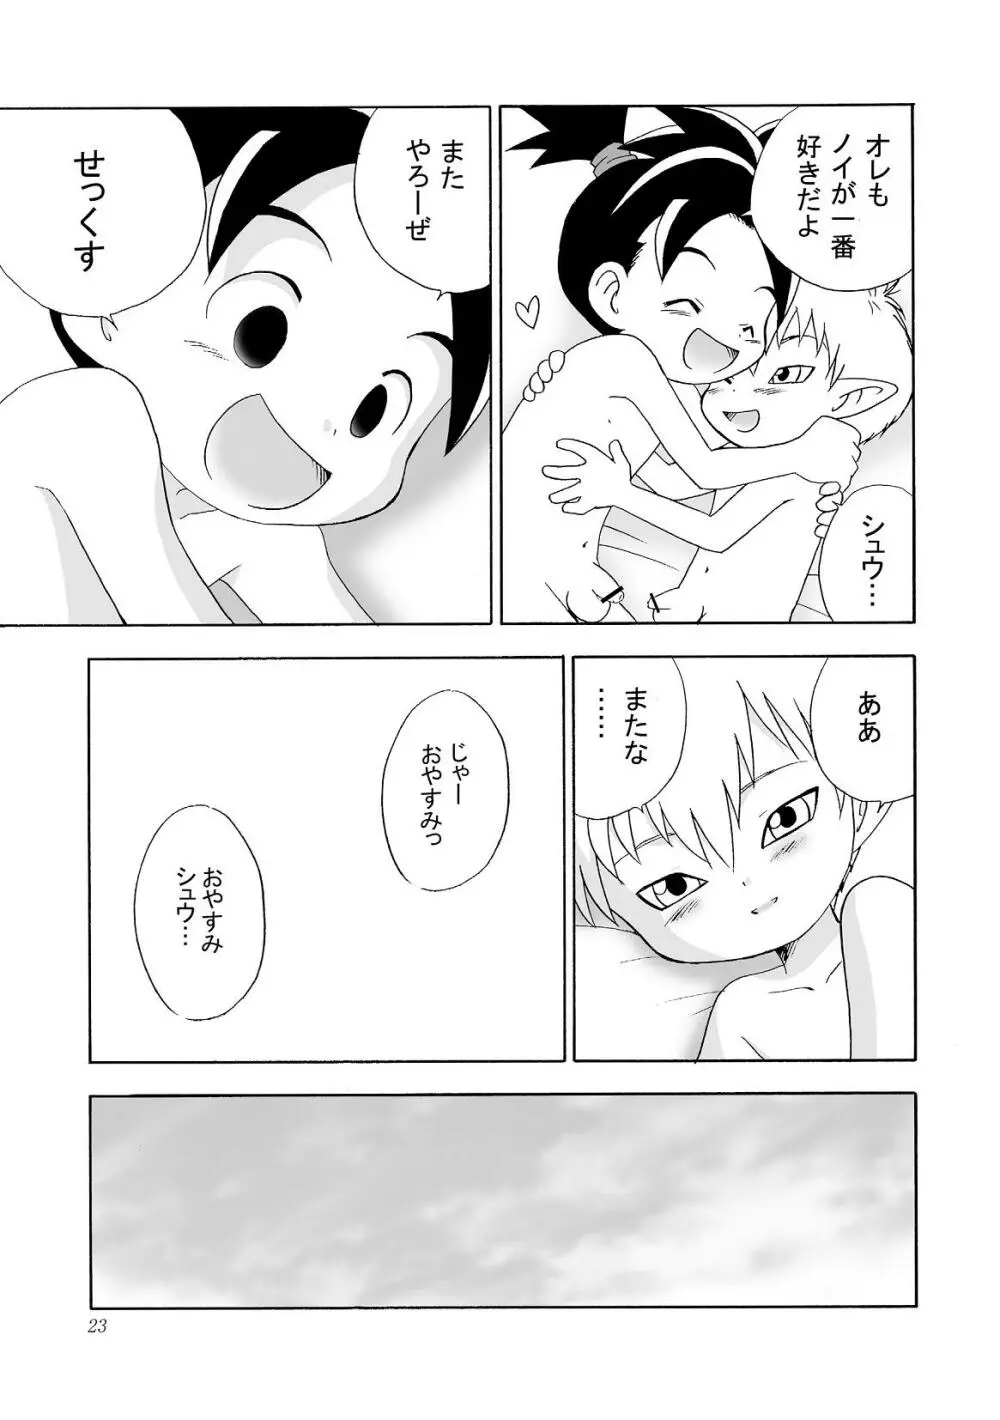 Yumemirukoro Sugitemo - One Page.23